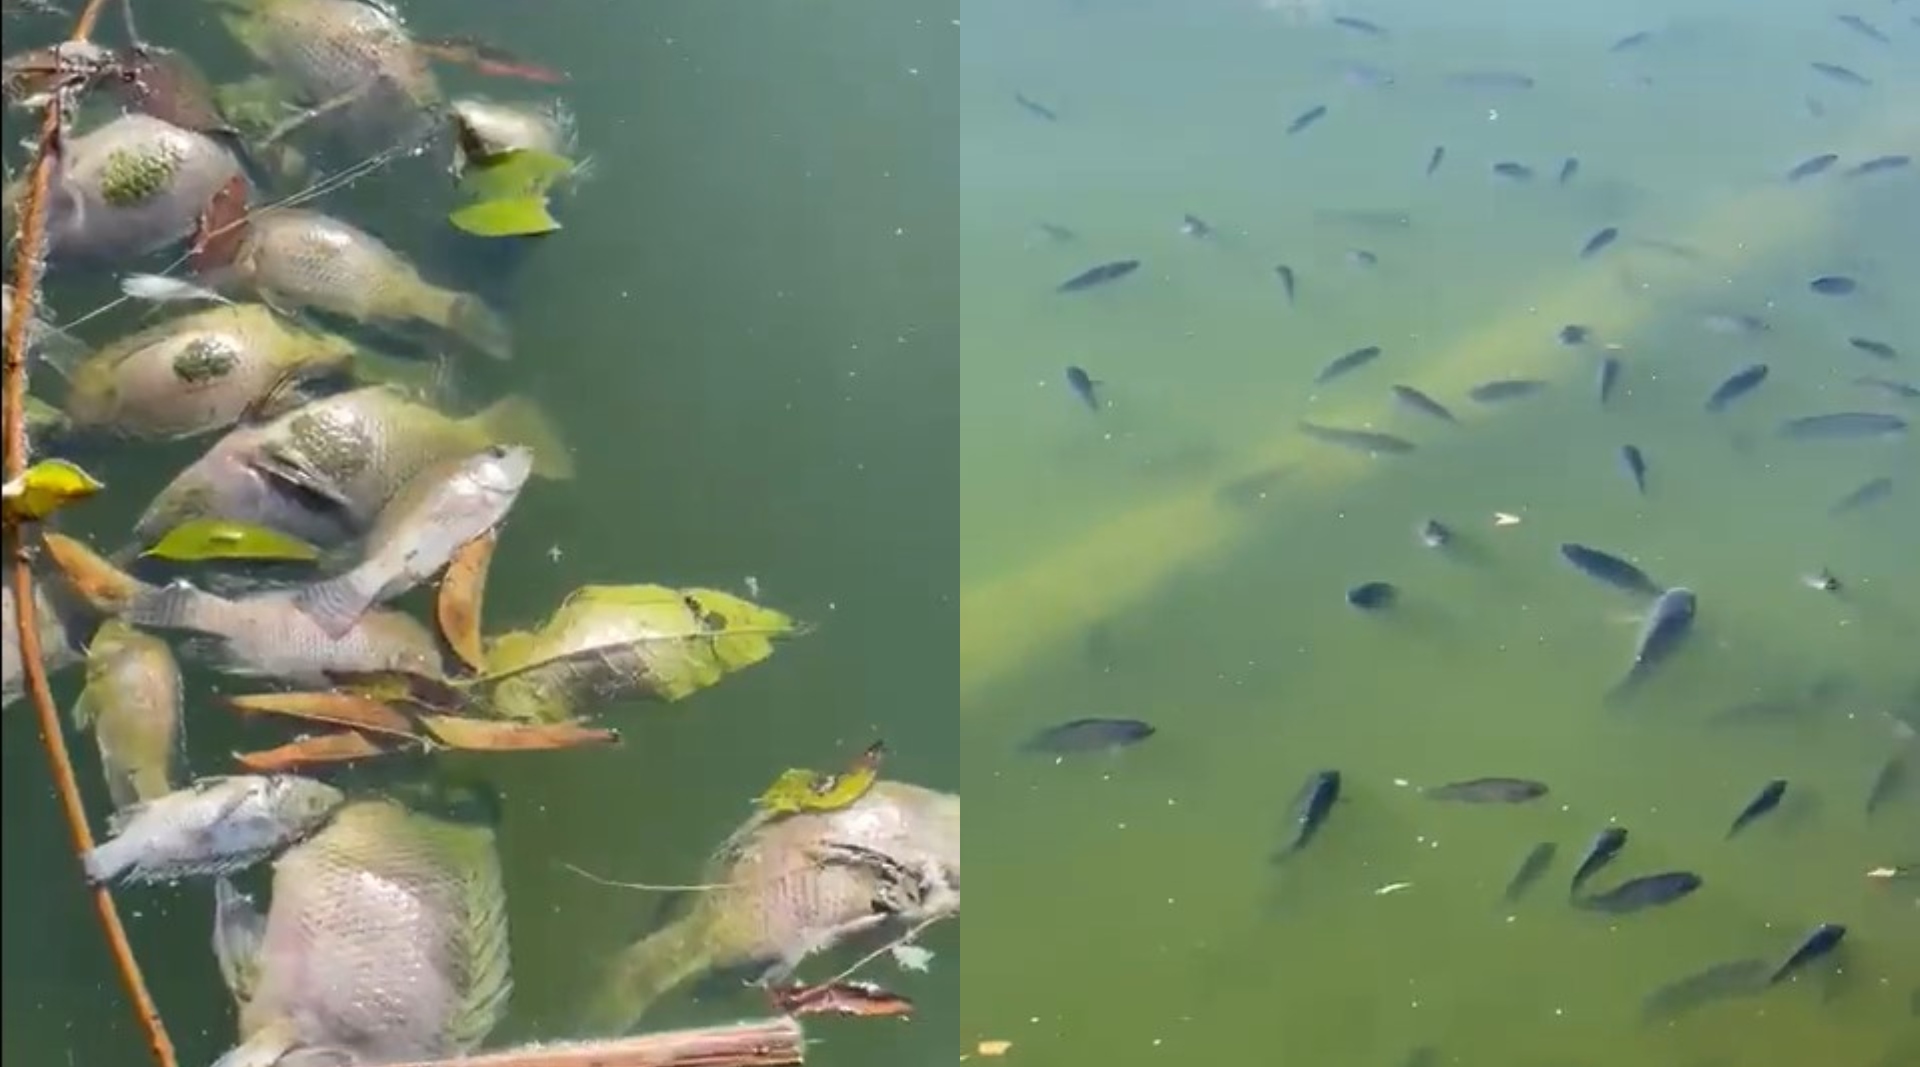 Mediante redes sociales, una persona denunció la muerte de decenas de peces en el lago del bosque. (Twitter/@pinkstarmx)